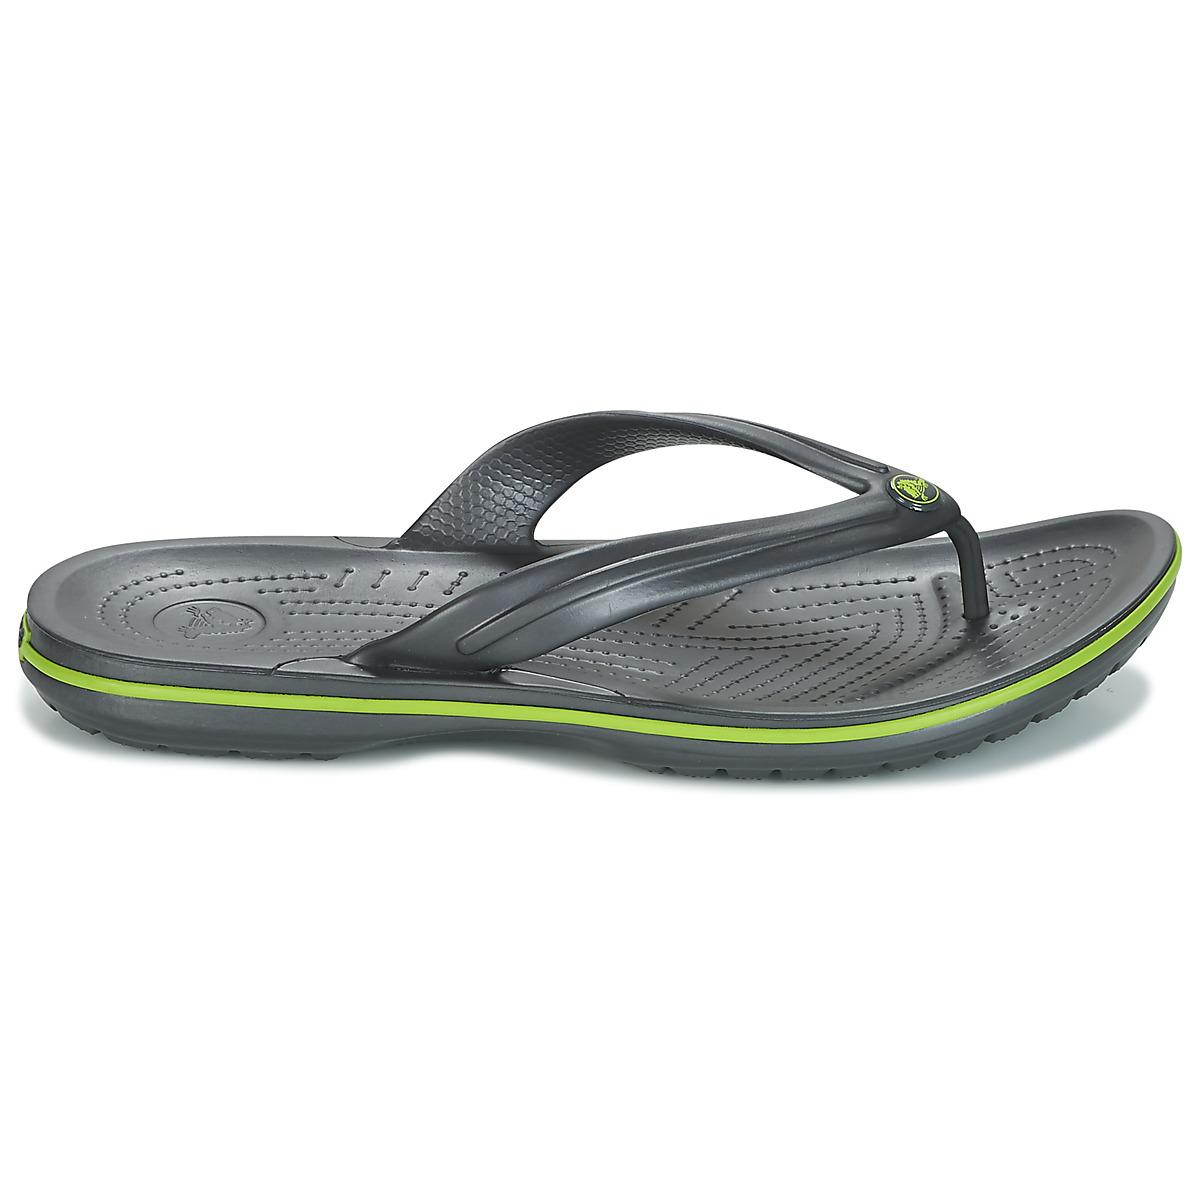  Crocs   Synthetic Crocband Flip  Men s  Flip  Flops  Sandals 